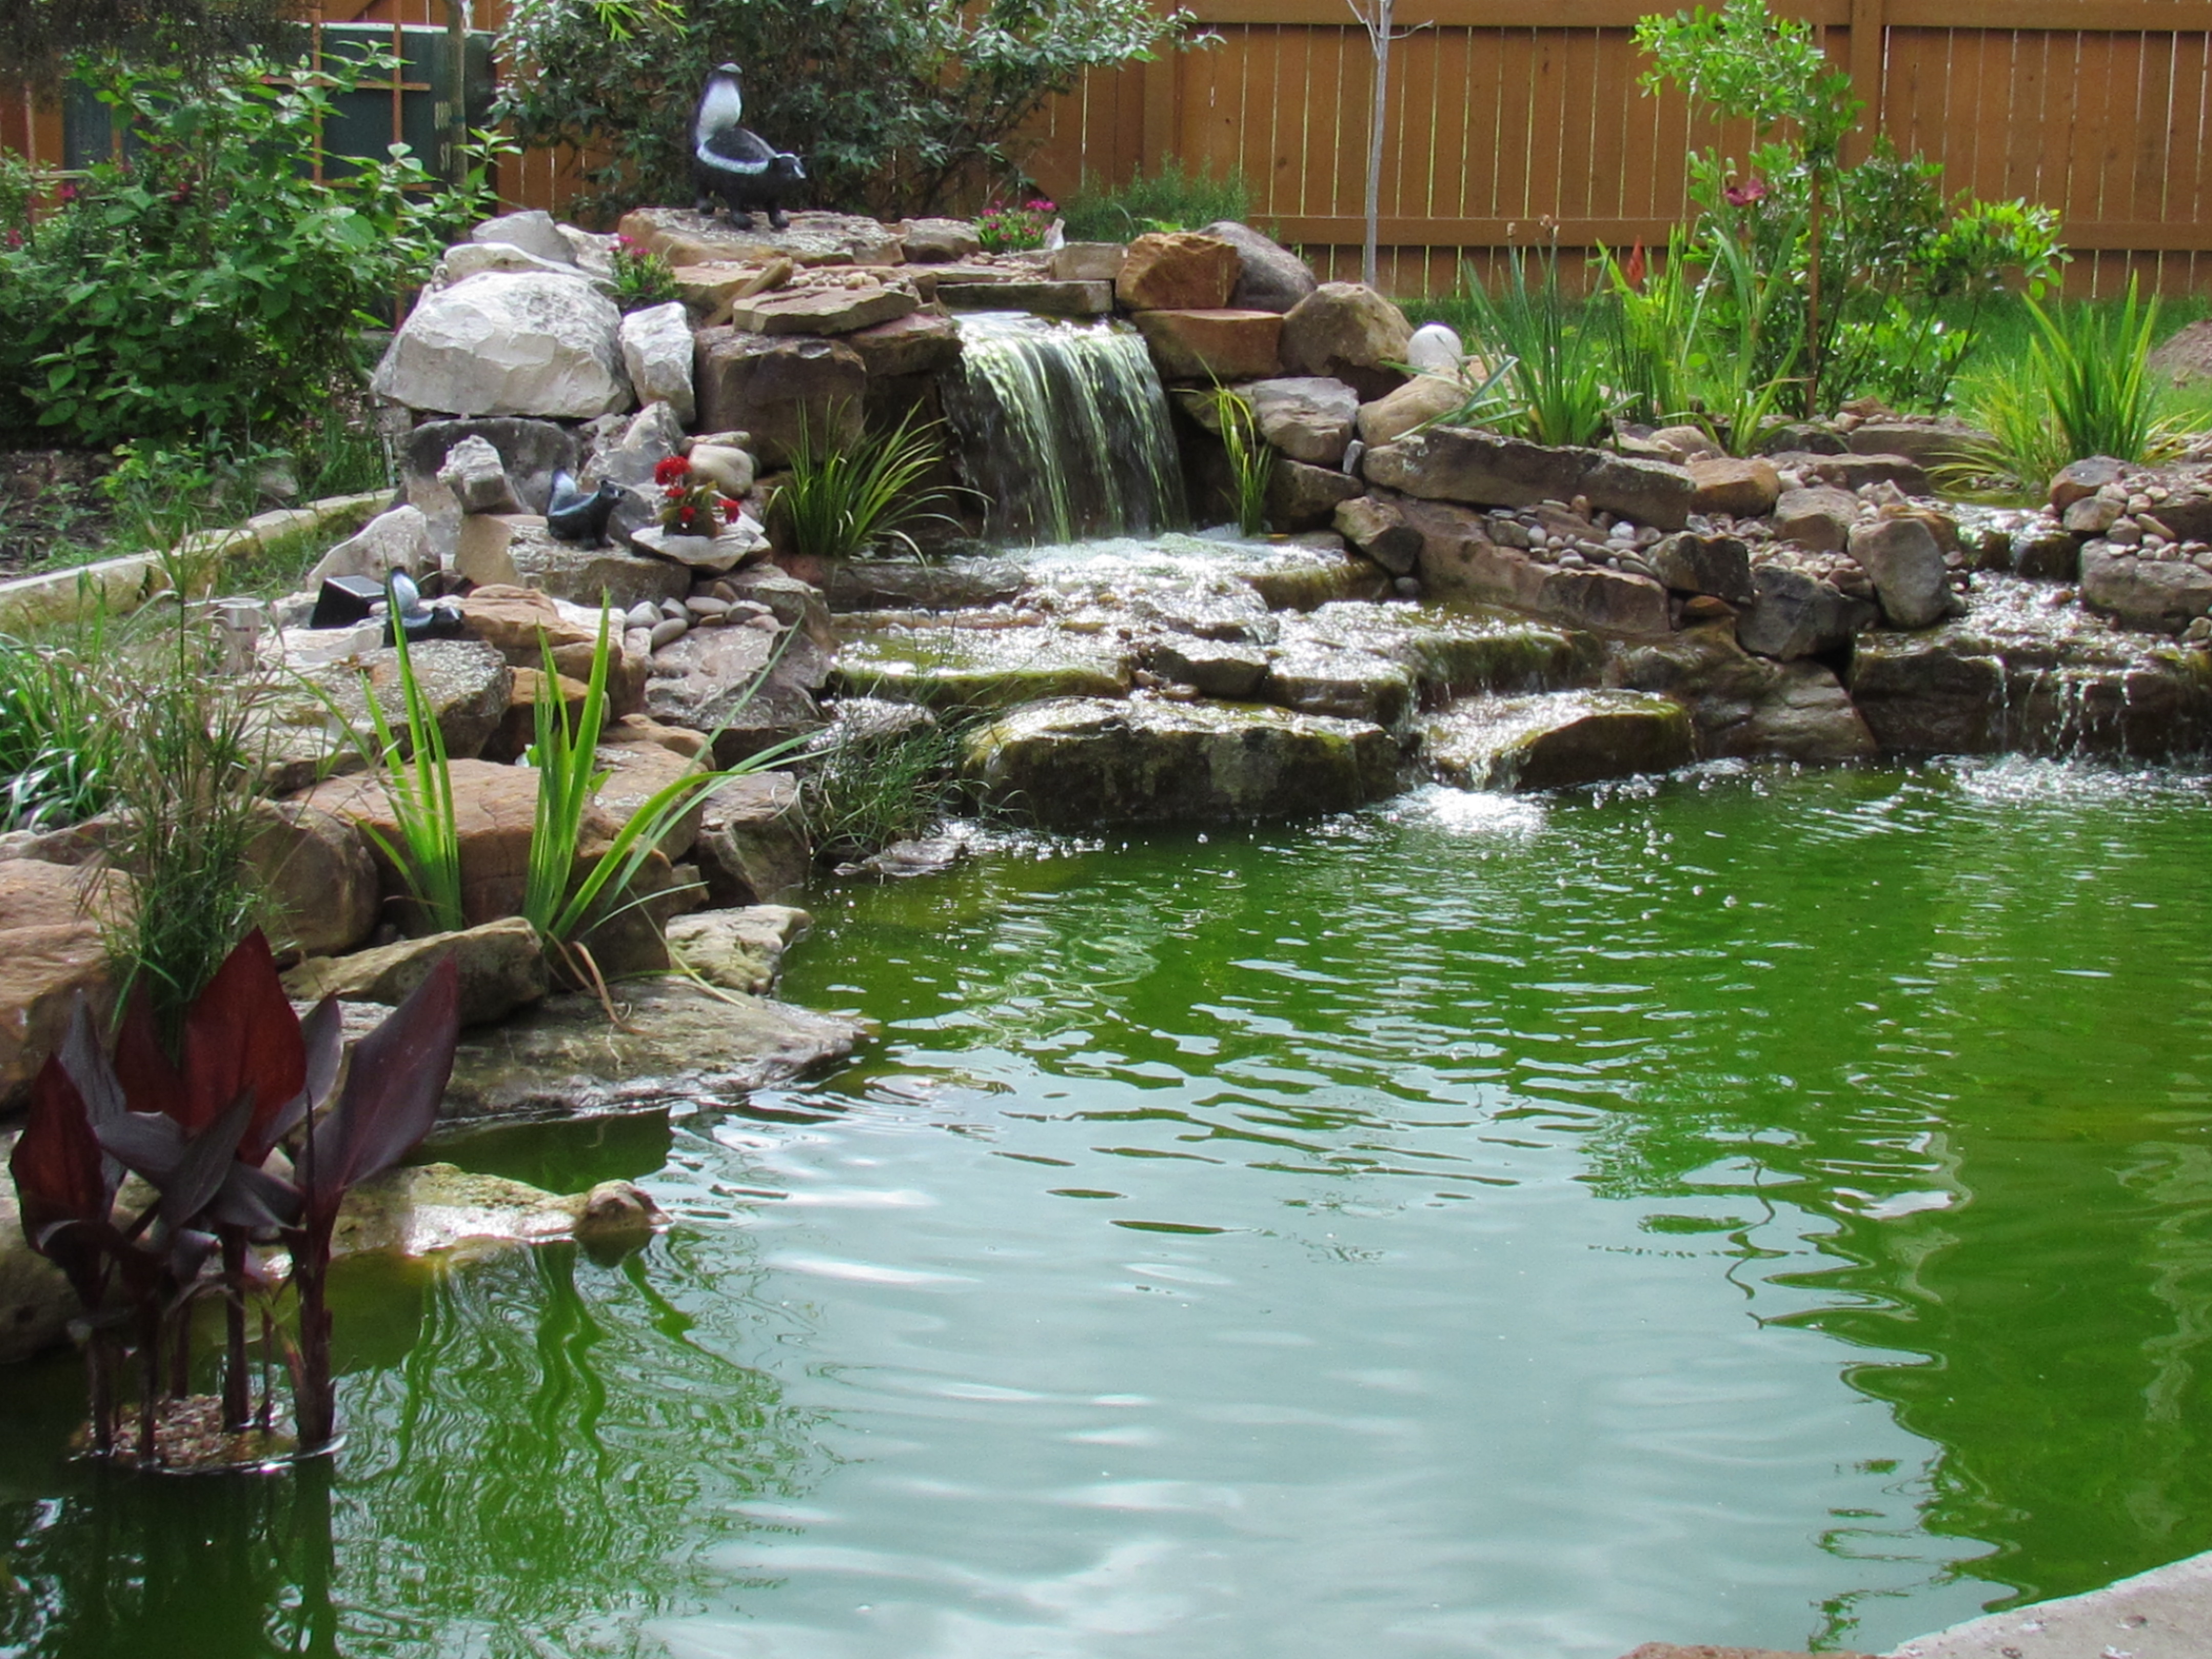 Comment maintenir l'eau claire d'un étang de jardin